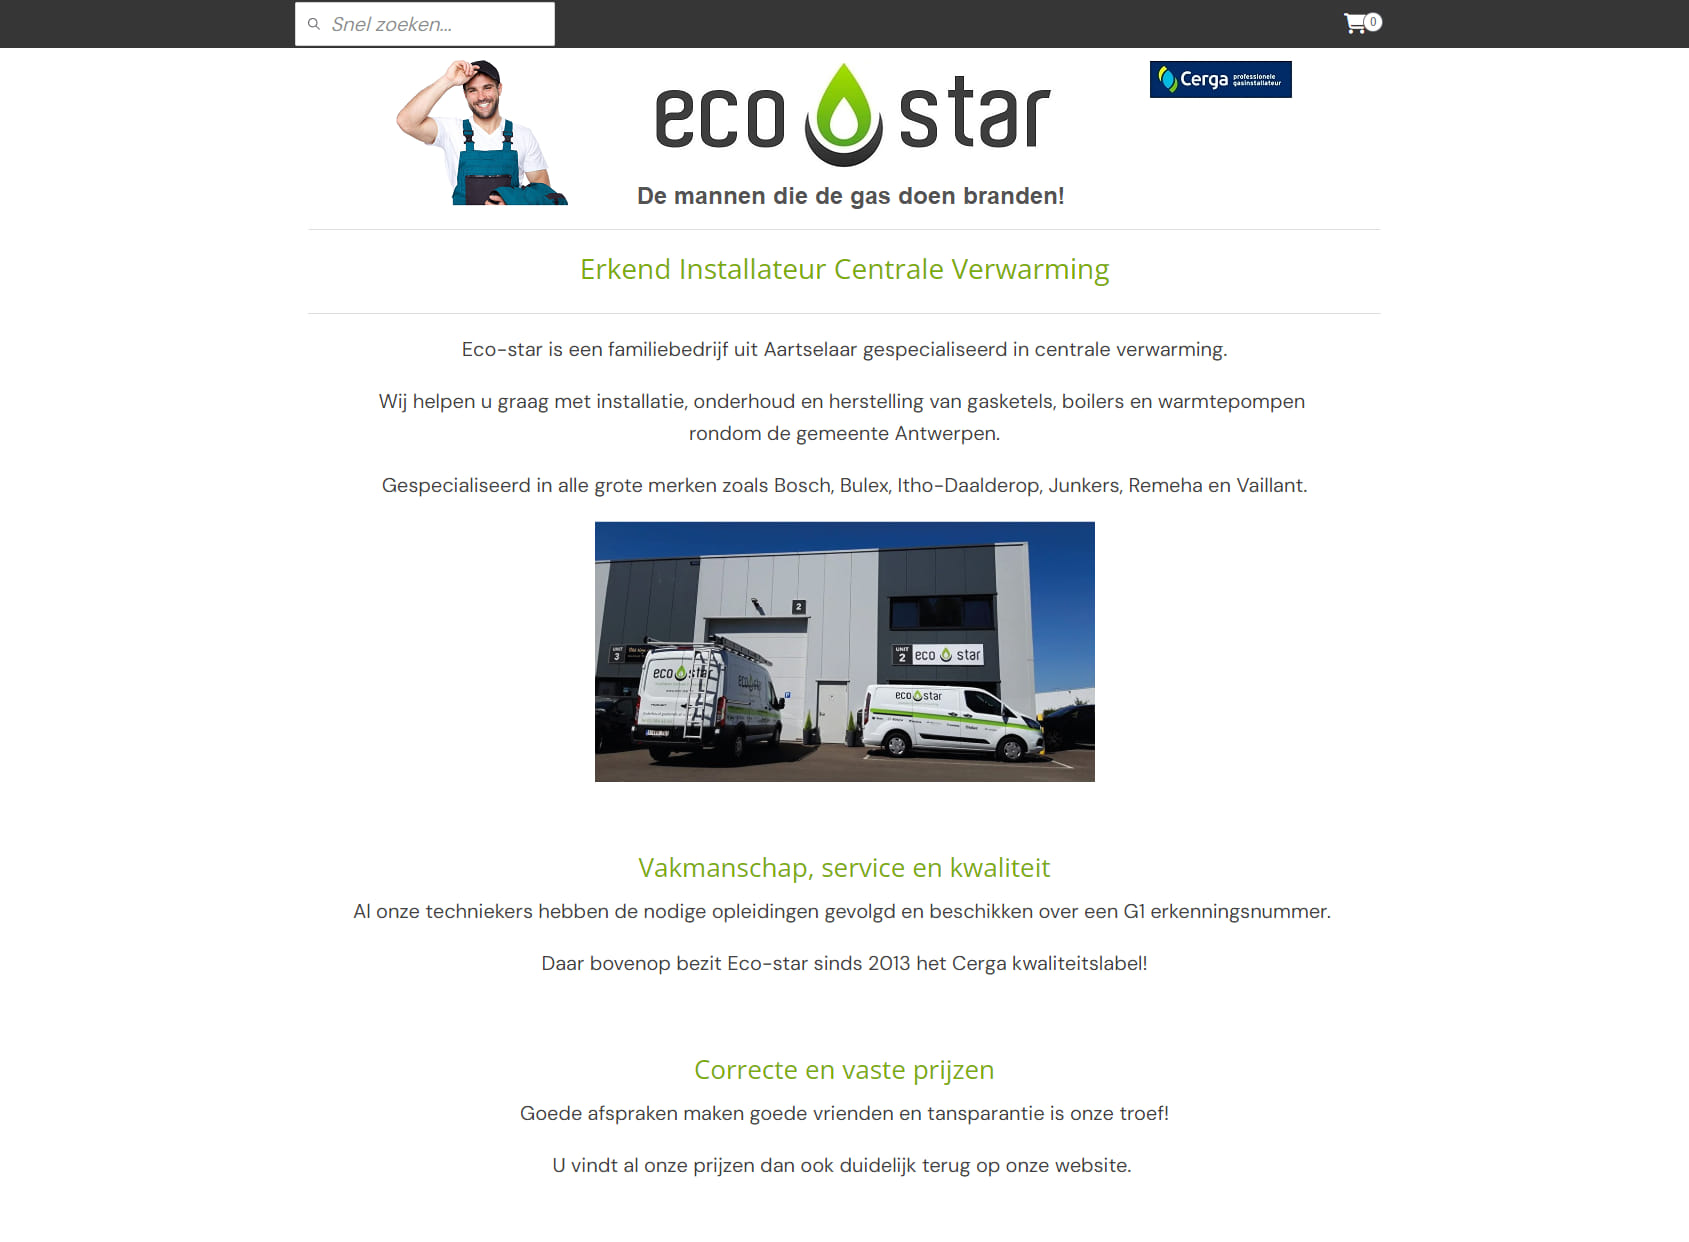 Eco-star - De mannen die de gas doen branden